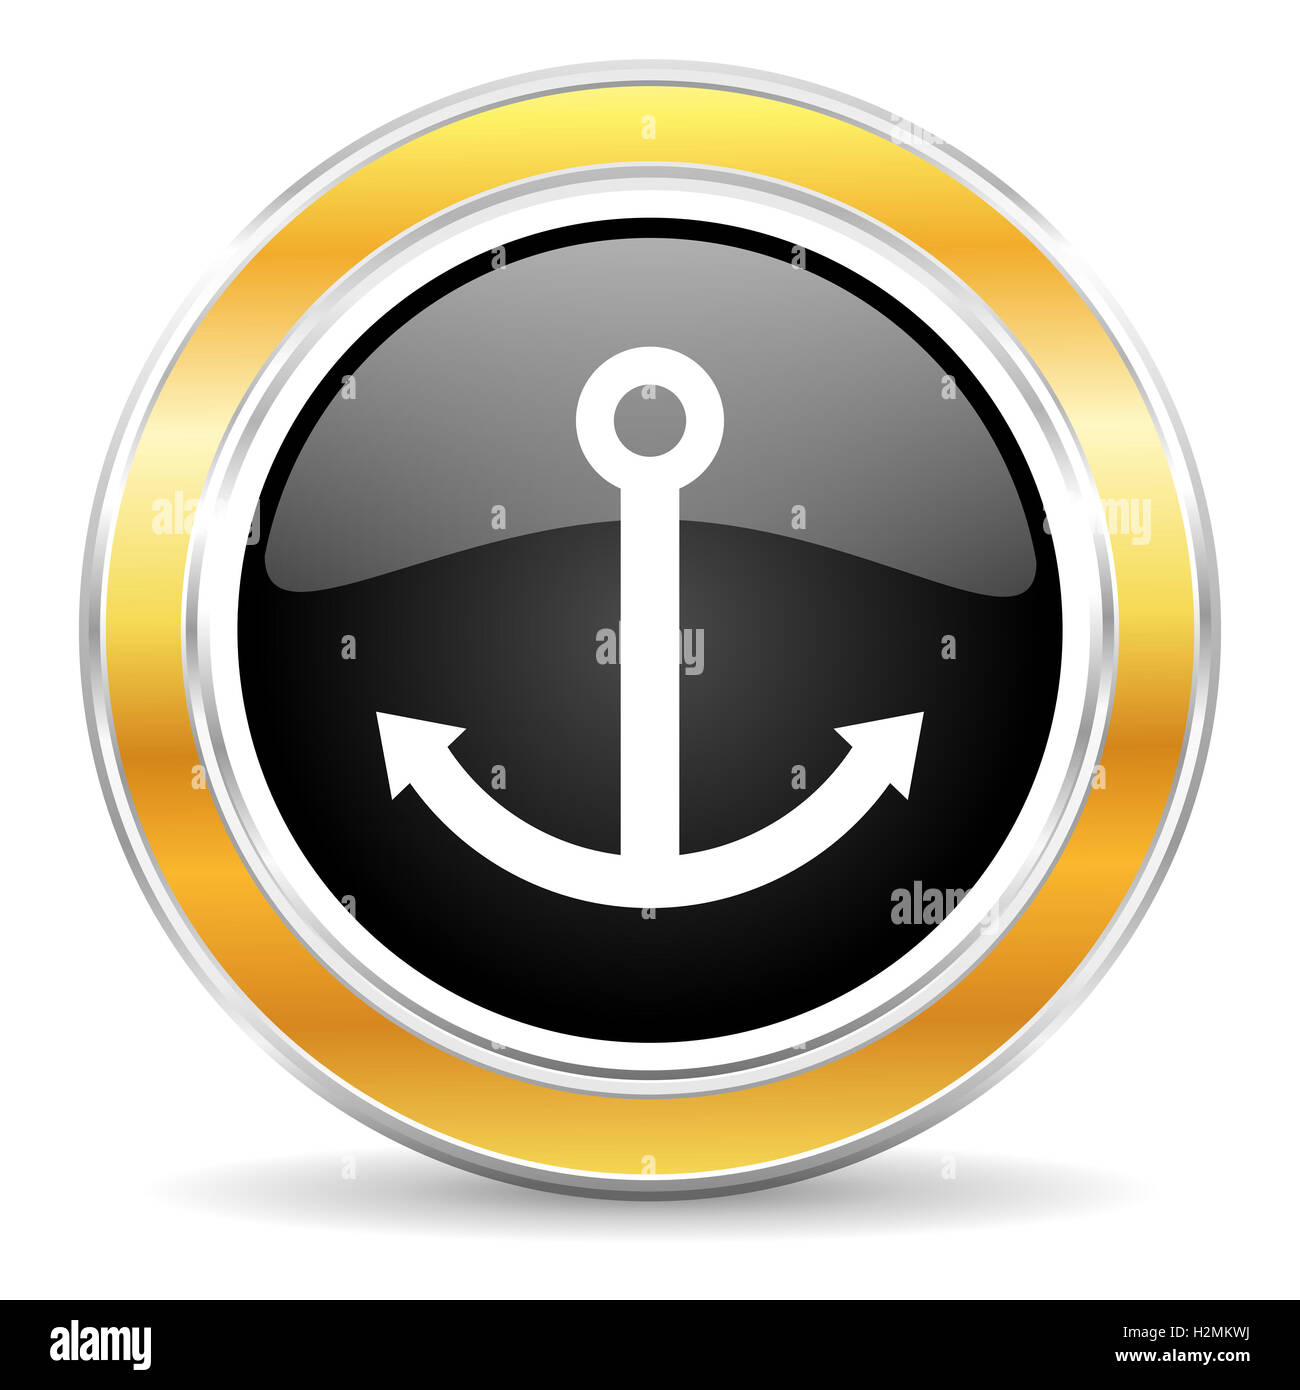 anchor icon Stock Photo